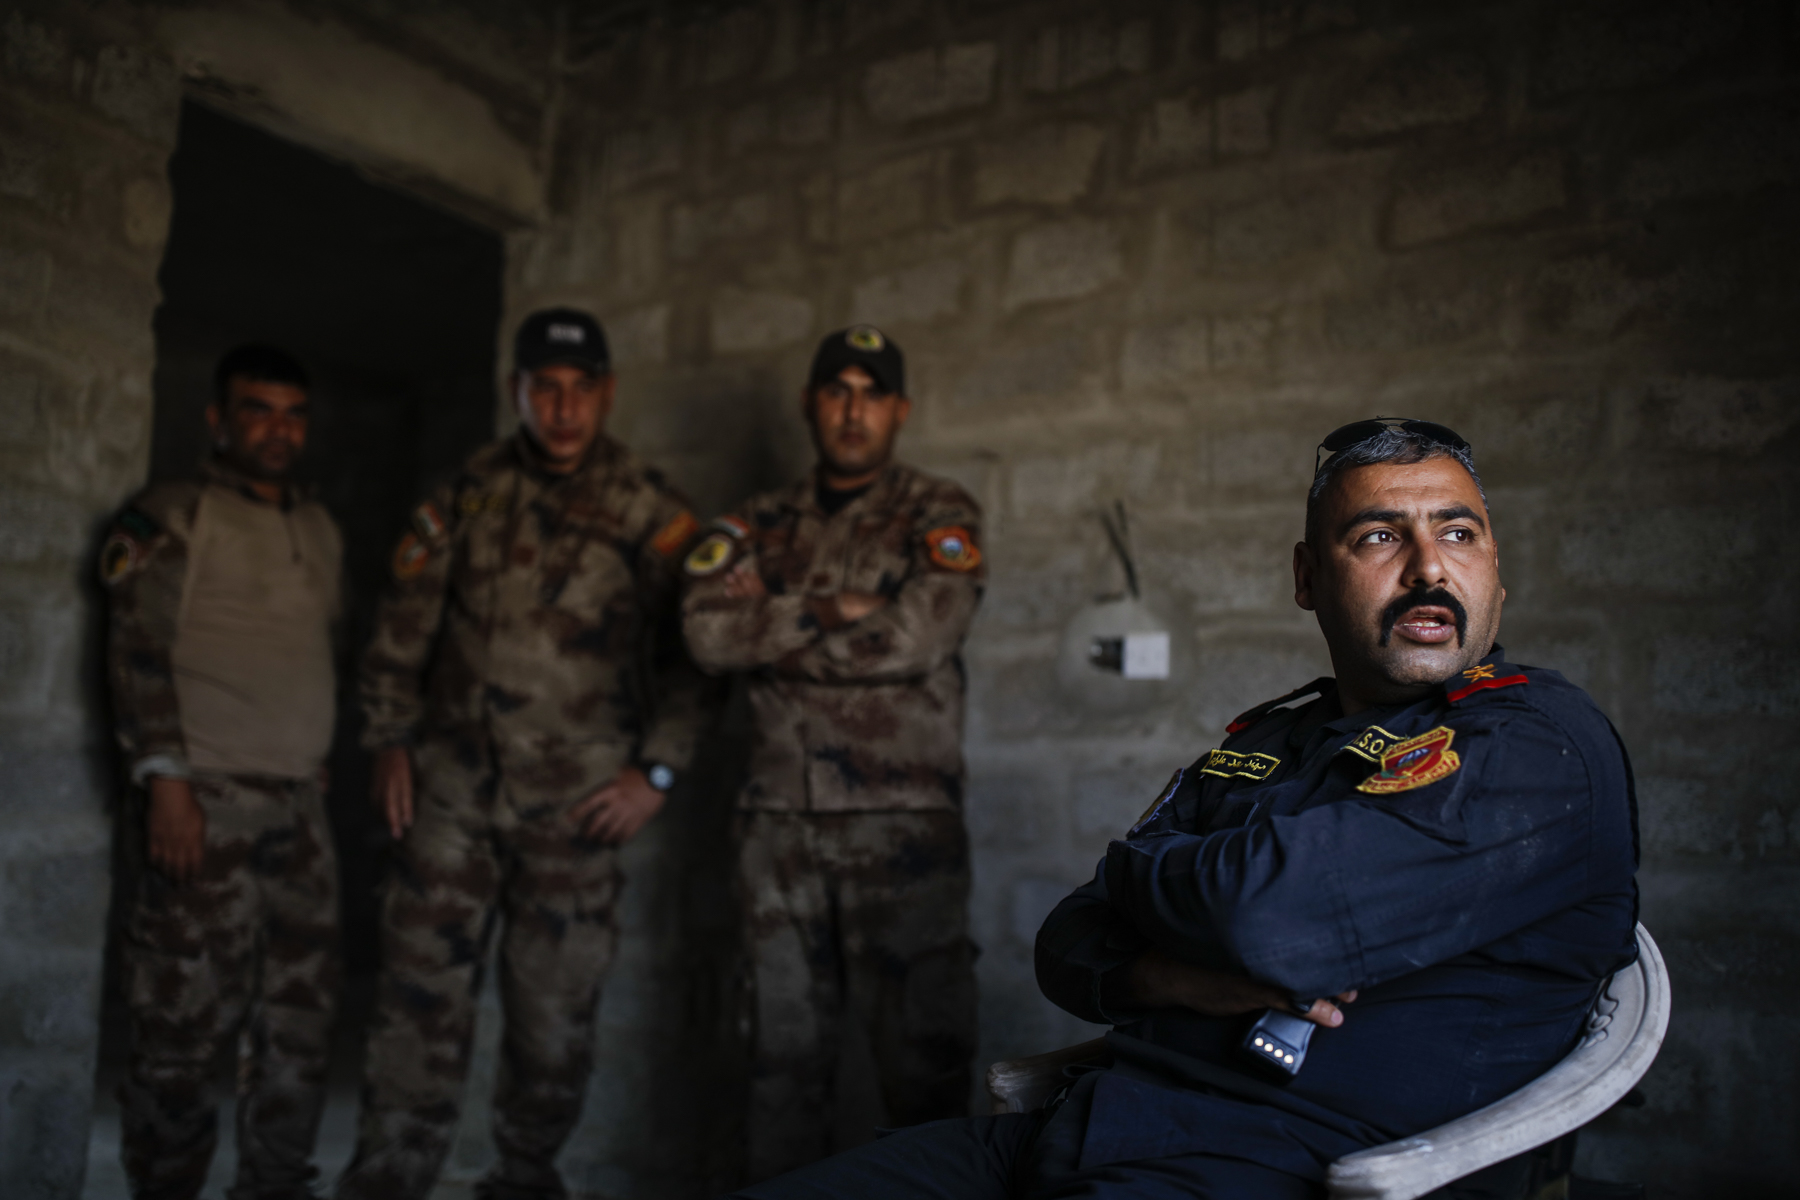 A 5 kilomètres de Mossul les hommes du Colonel Mohanet, Commandant du 1er Bataillon de l'ISOF 1, partie du ICTS, qui avec le 2eme Bataillon commandé par le Major salam,  forme ce qu'on appelle la {quote} Golden Division{quote}, prennent position dans le petit village de Muaskar Janin. A 1 km se trouve le village de Bazwaya. Ce sont les premières position de Daesh et le dernier gros Bourg avant Mossul à 5 km. Le Colonel Mohanet, passé par les académies militaires Iraquienne est un officier peu expensif et discipliné. Son QG impécable à l'opposé des autres ( Major Salam) est un reflet de sa personnalité. Les Positions de sniper du 1rst Batalion sont en général équipée  d'une mitarilleuse légère M60 US, d'un fusil de gros calibre BARETT, et de carabine en 270 Winchester. Plus un char russe caché dans une maison par Daesh, inspecté par le Colonel Mohanet. Sur la route de Qaraqosh, les restes calcinés d'un jihadiste sur la carcasse de son pick up neutralisé par l'ICTS.